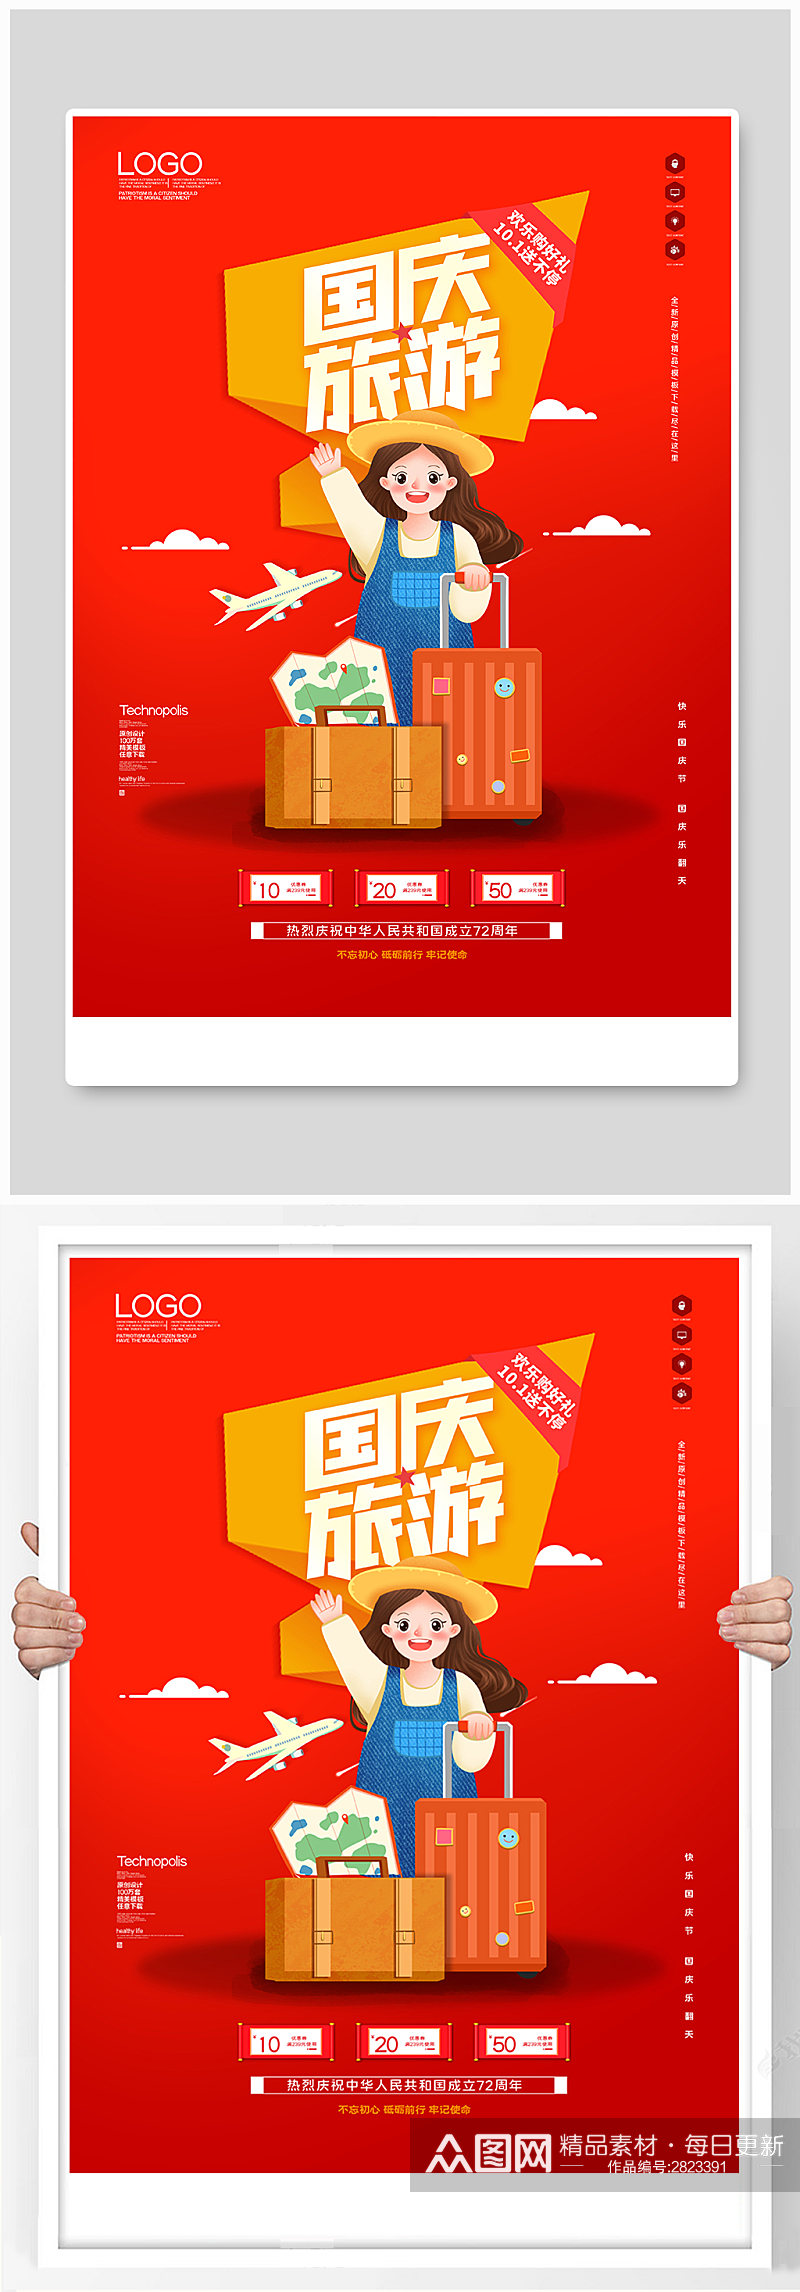 国庆节旅游创意时尚宣传海报素材